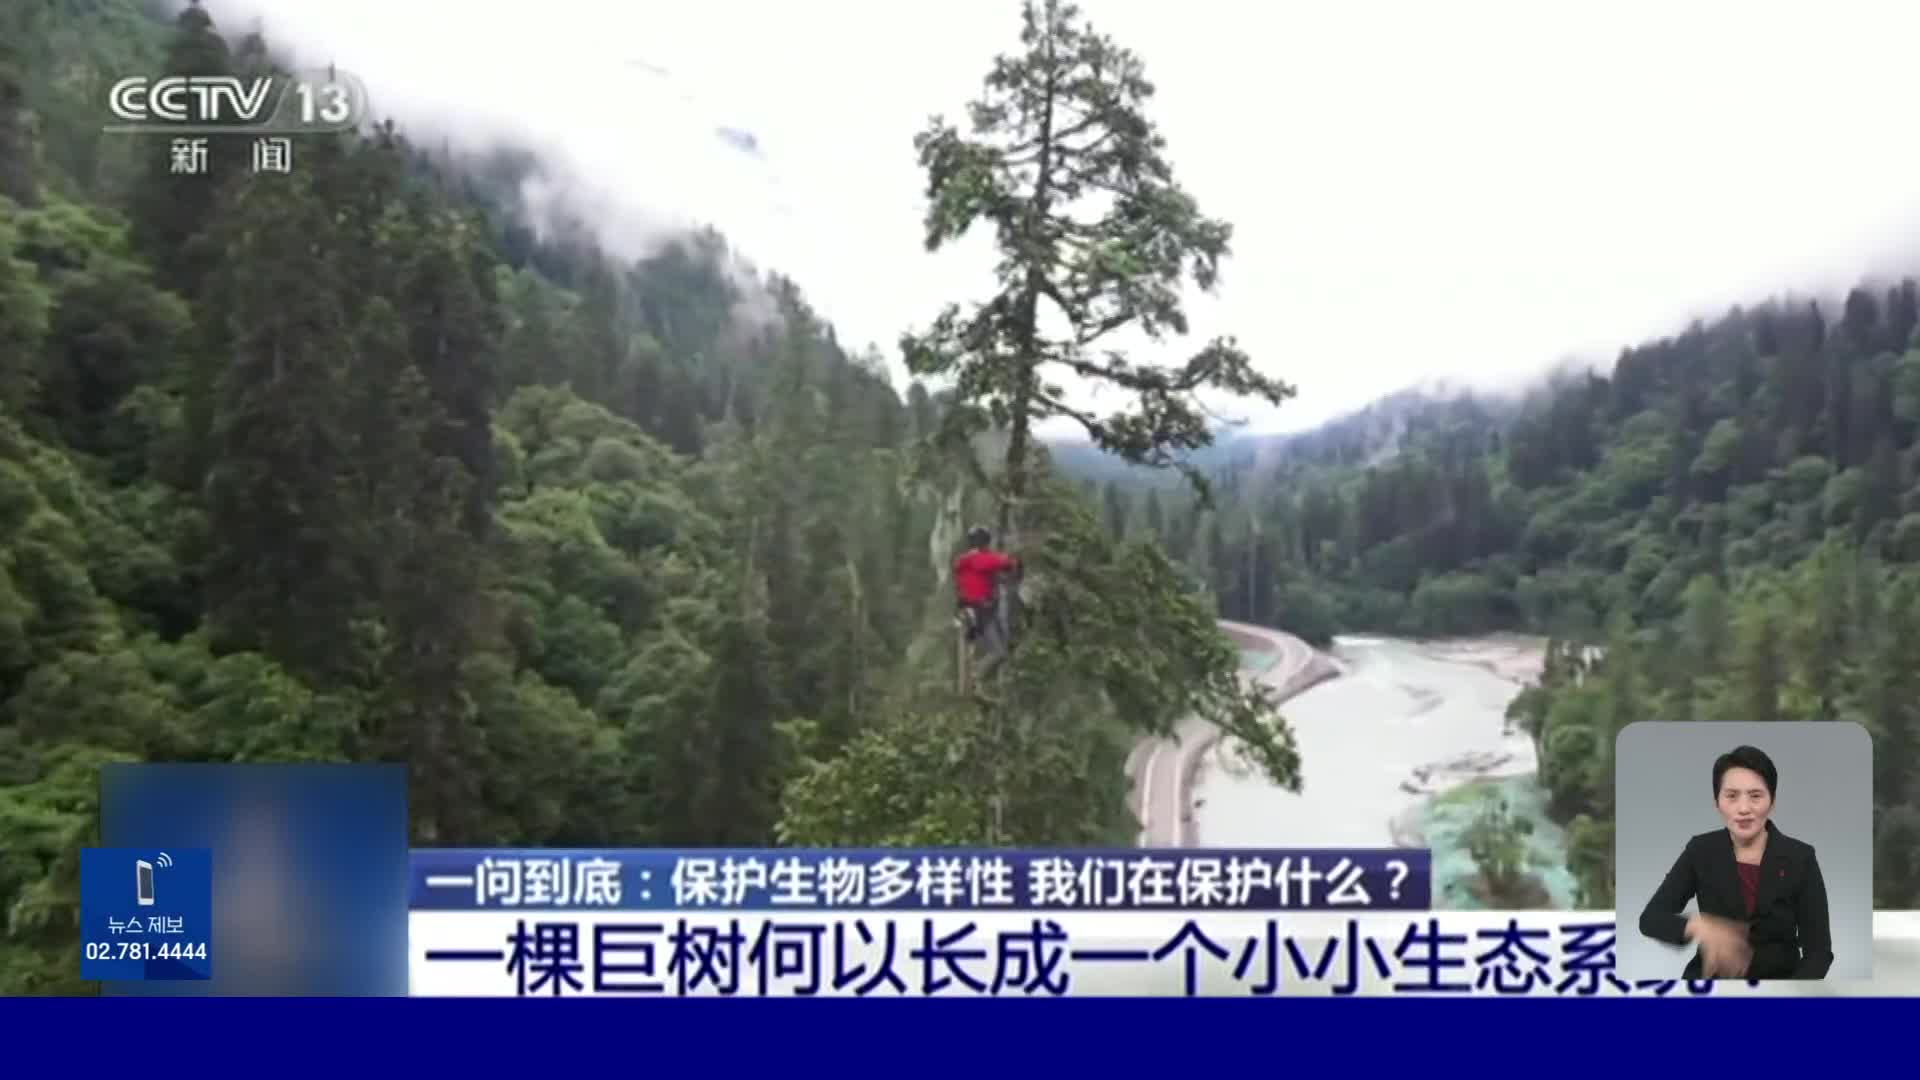 중국에서 가장 키 큰 나무의 높이는 83.4m